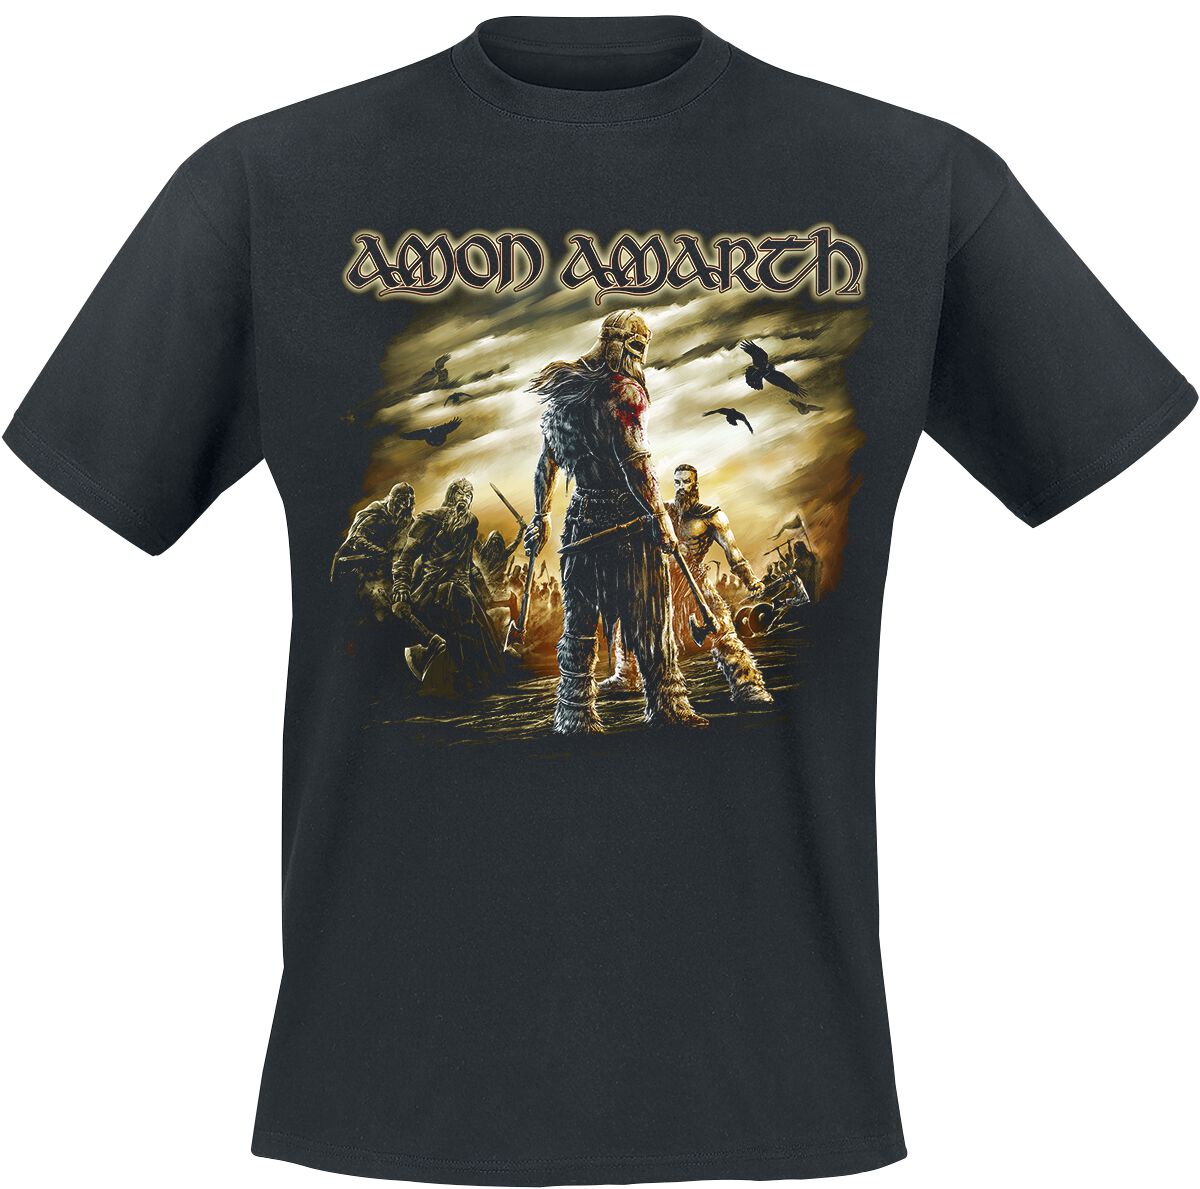 Amon Amarth T-Shirt - Get In The Ring - M bis XL - für Männer - Größe L - schwarz  - Lizenziertes Merchandise!